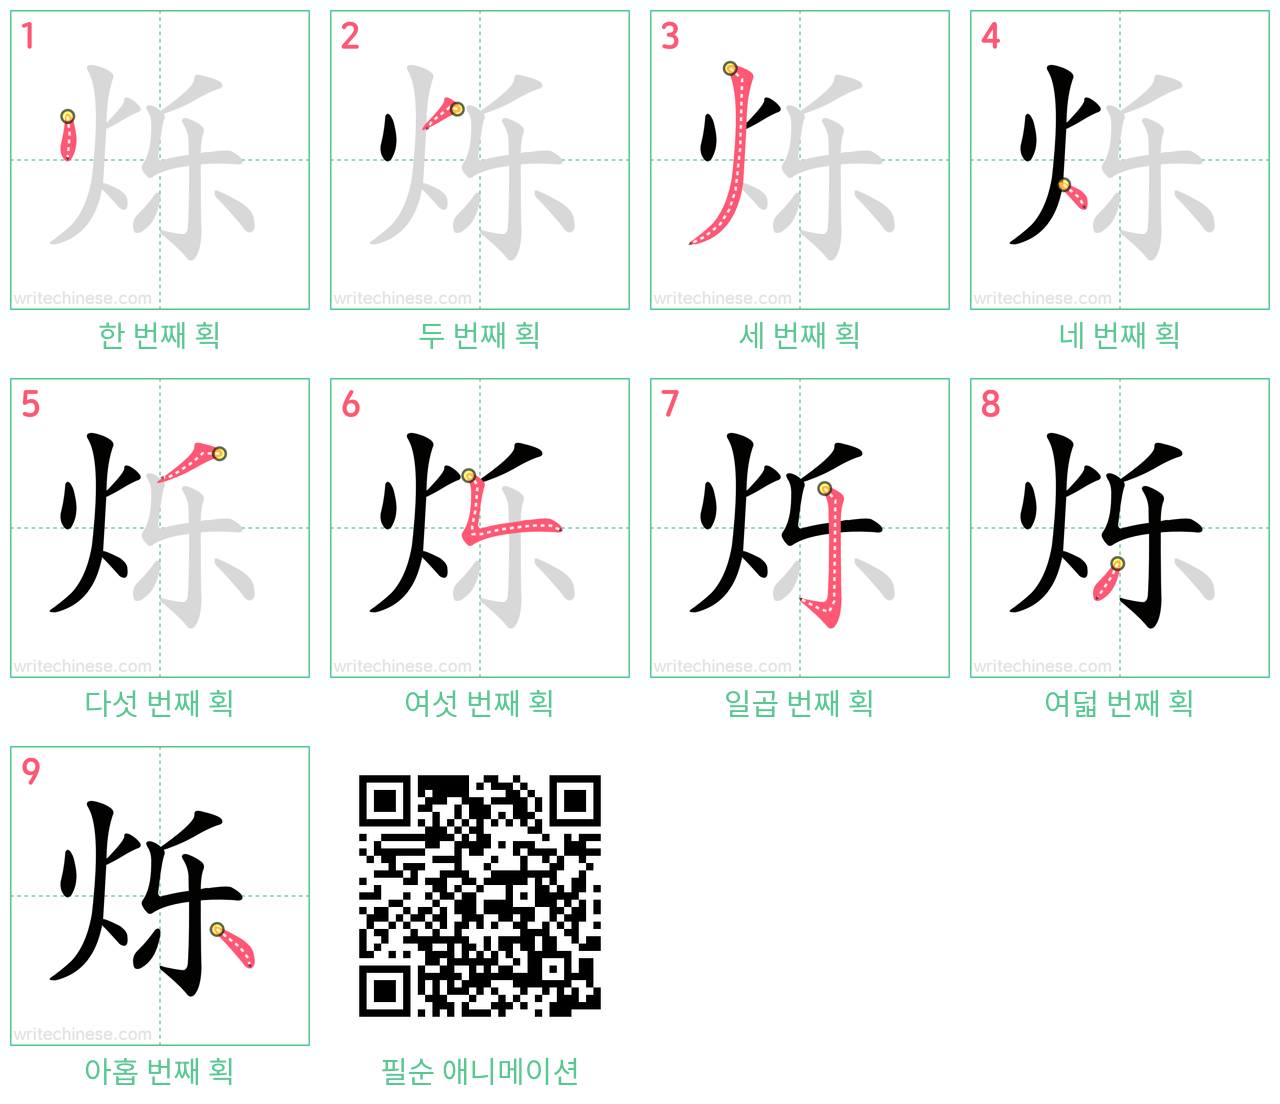 烁 step-by-step stroke order diagrams